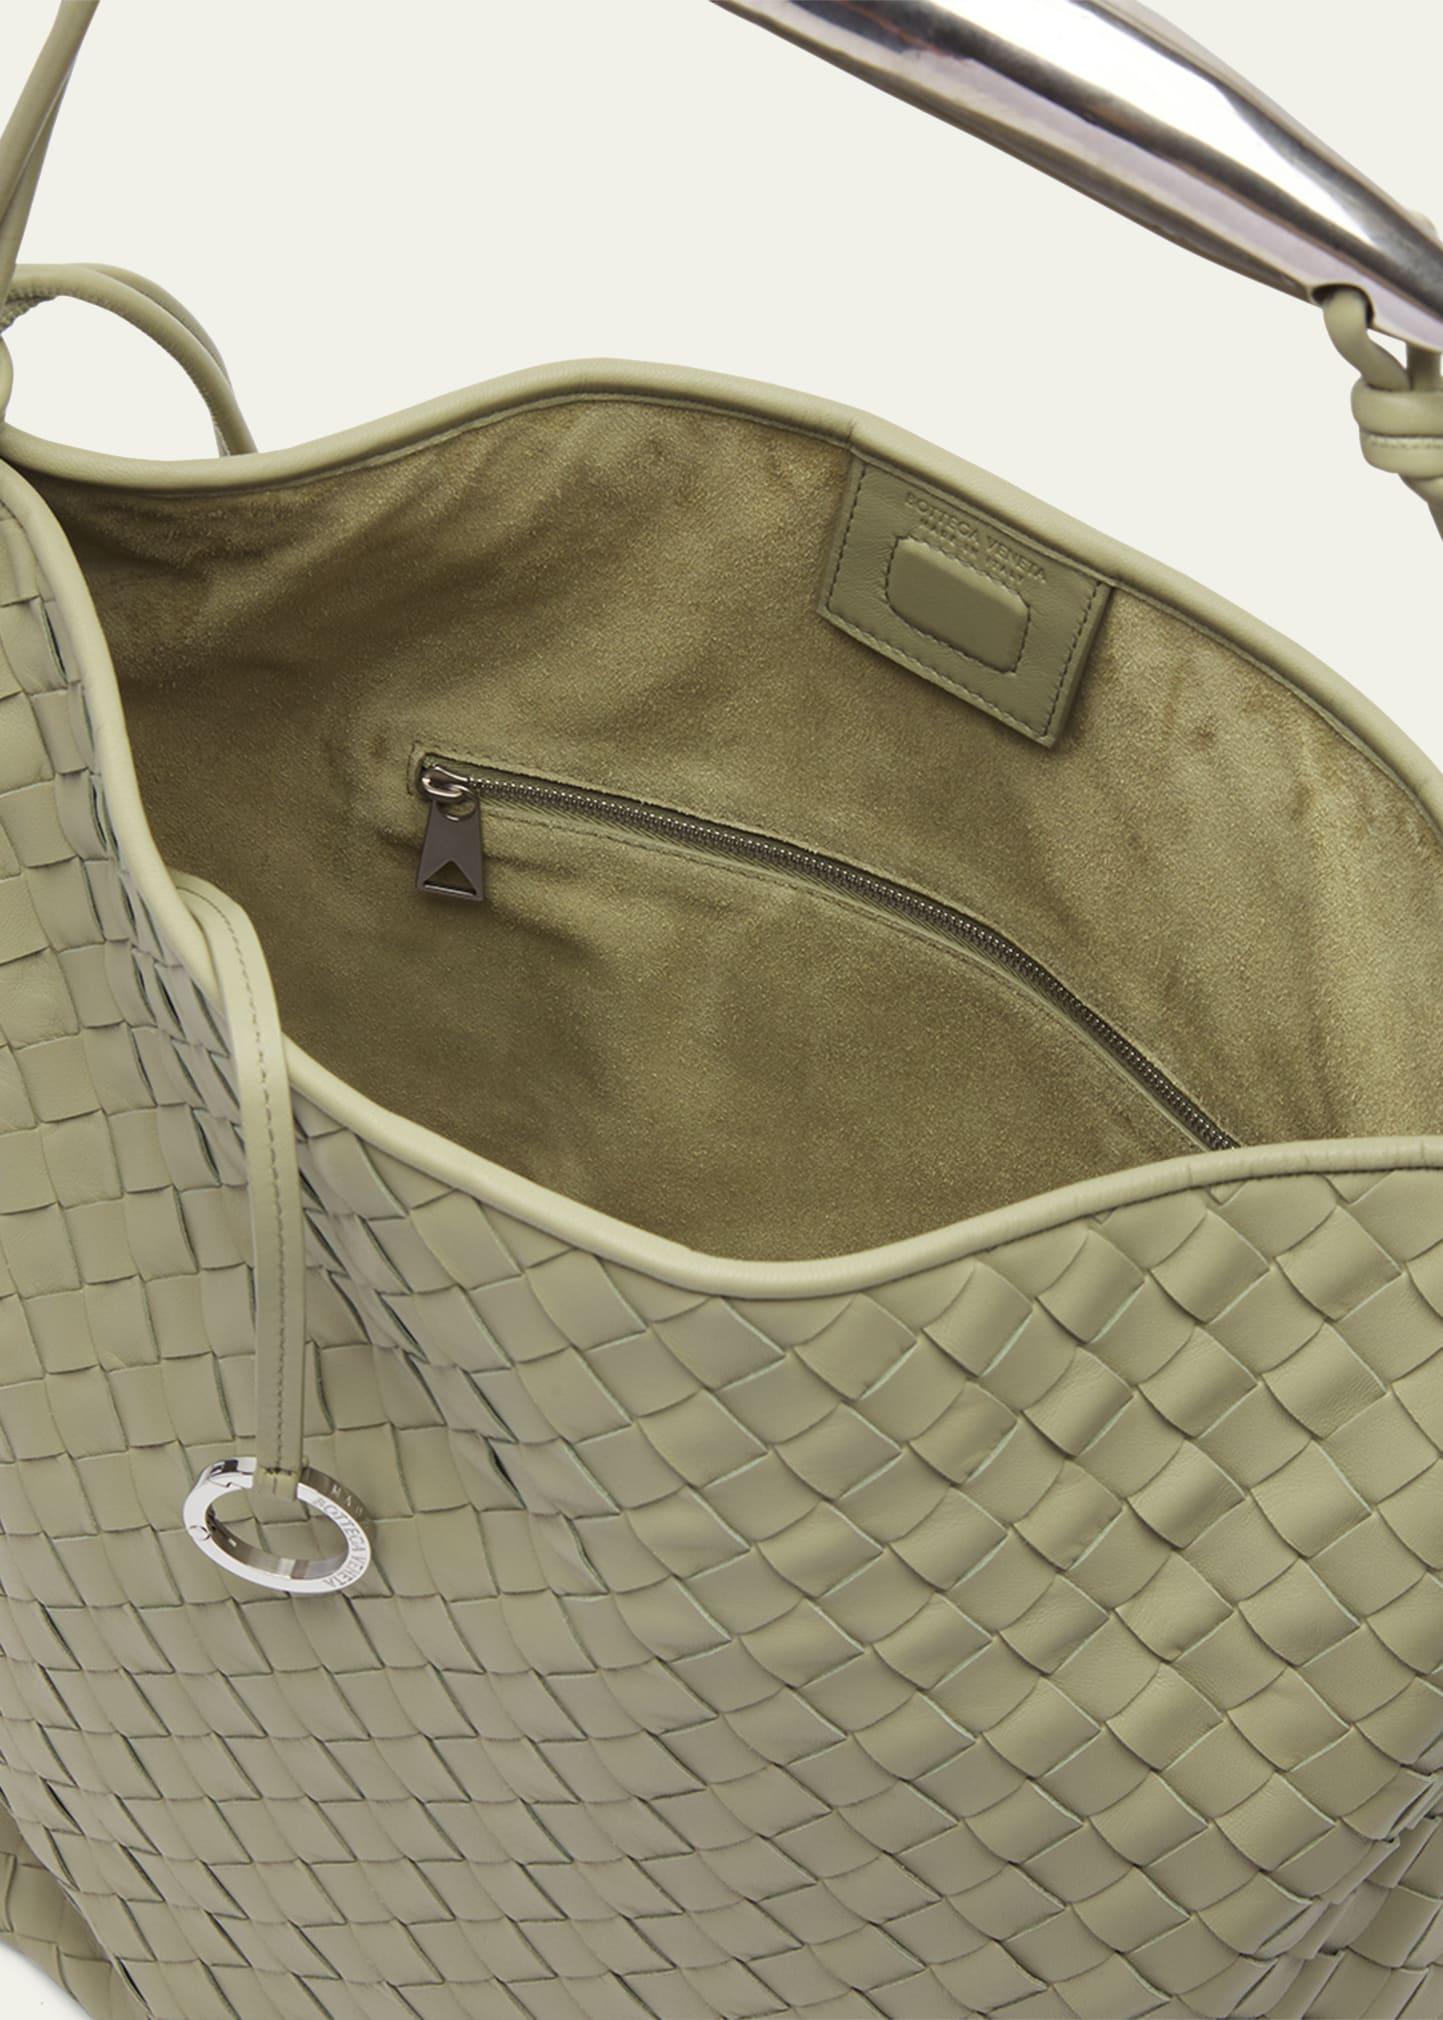 Bottega Veneta Sardine Large Intrecciato Leather Hobo Bag